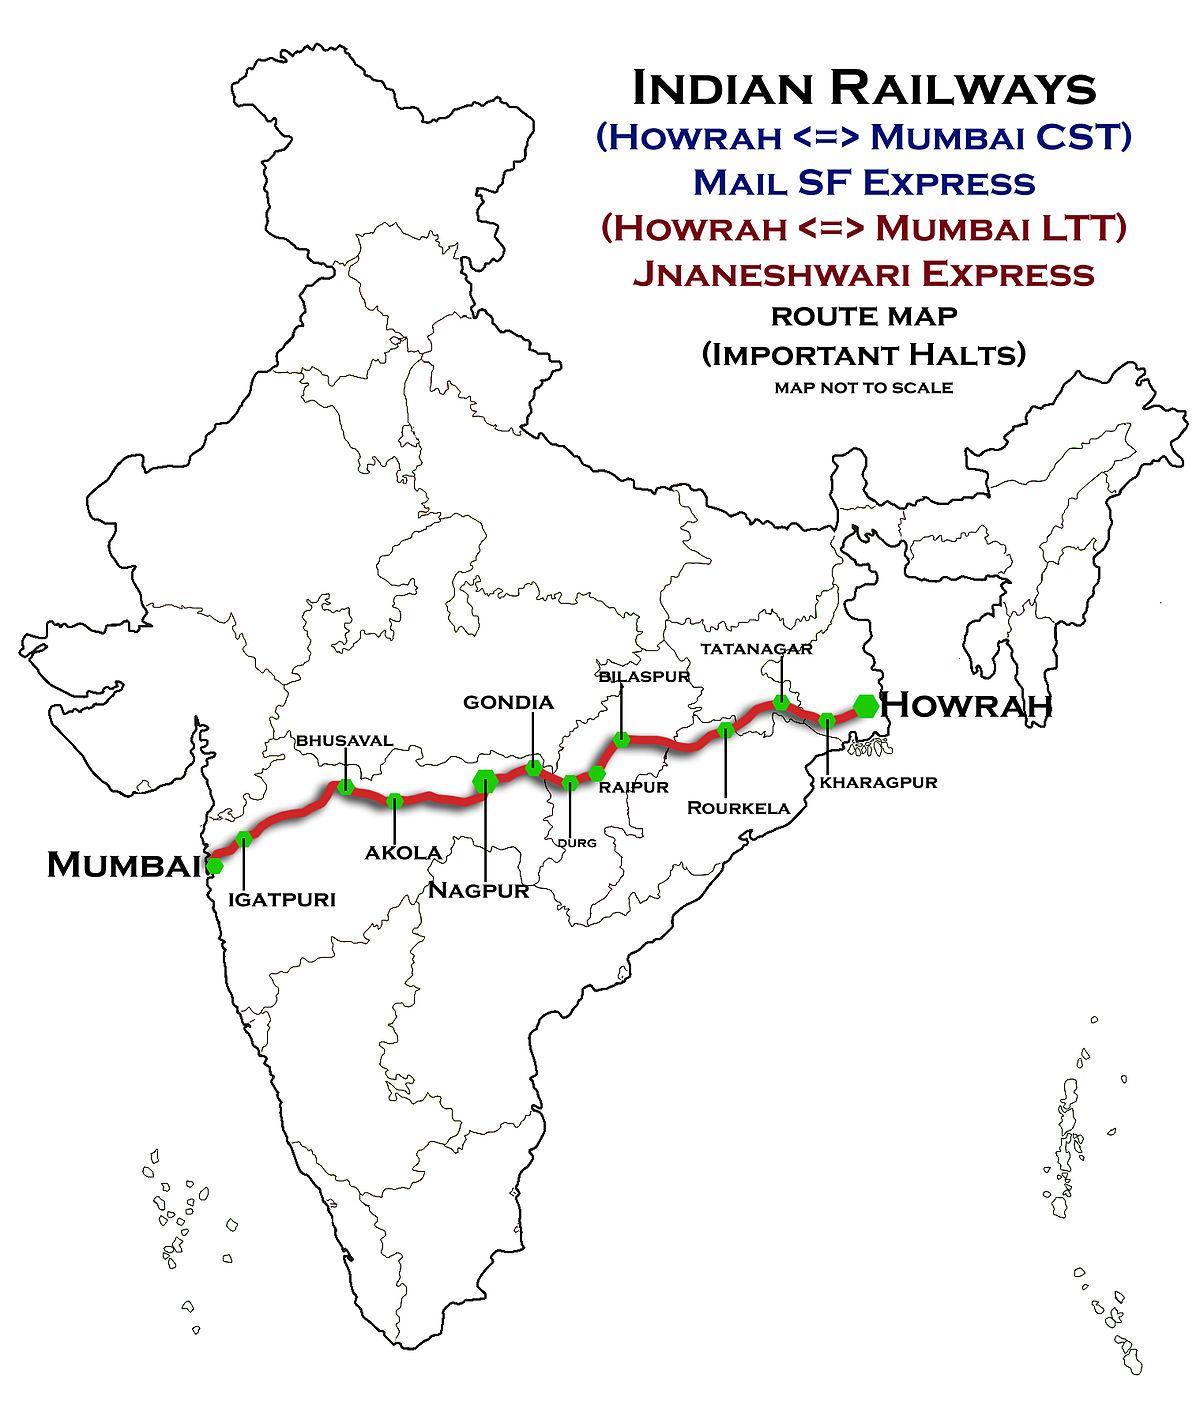 nagpur Mumbai express autoput mapu